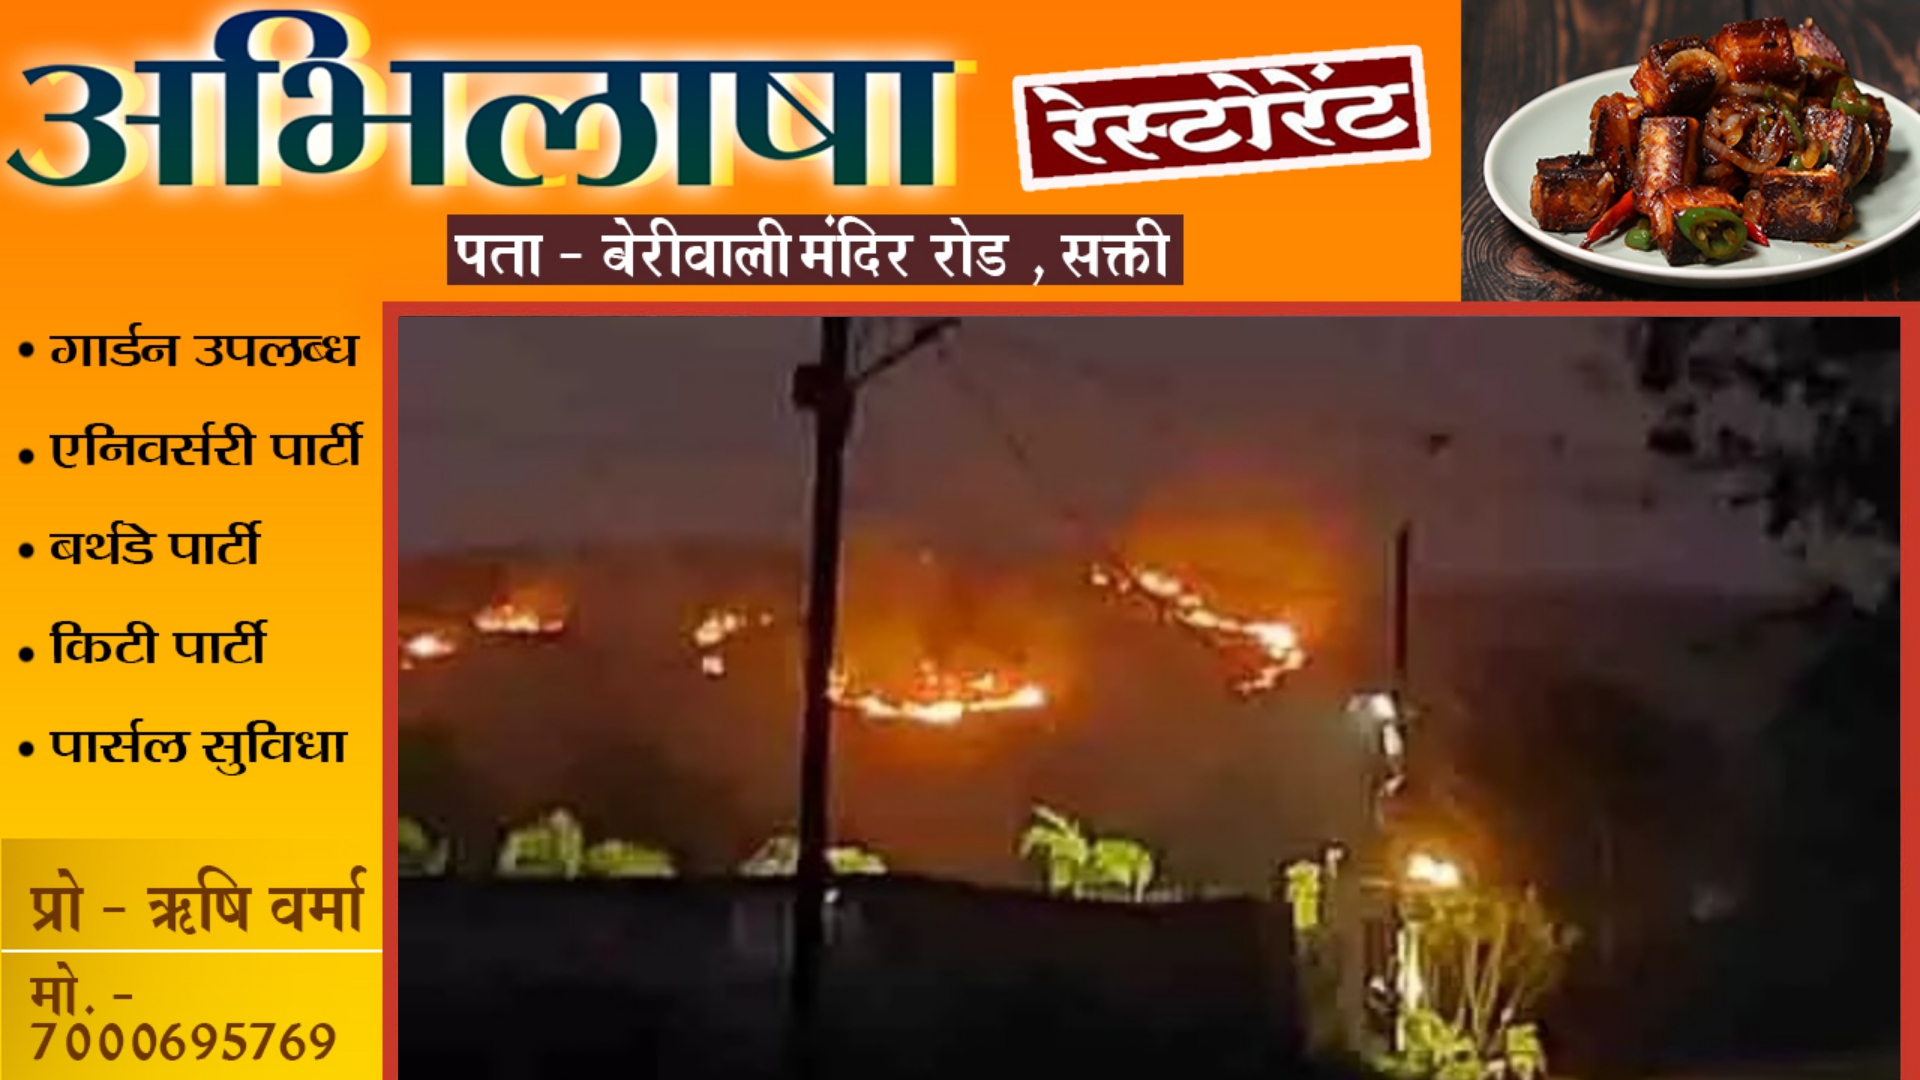 छत्तीसगढ़ - रामपुर के पहाड़ में लगी भीषण आग , दूर तक दिखाई दे रही है लपटे , आग पर काबू पाने का प्रयास जारी